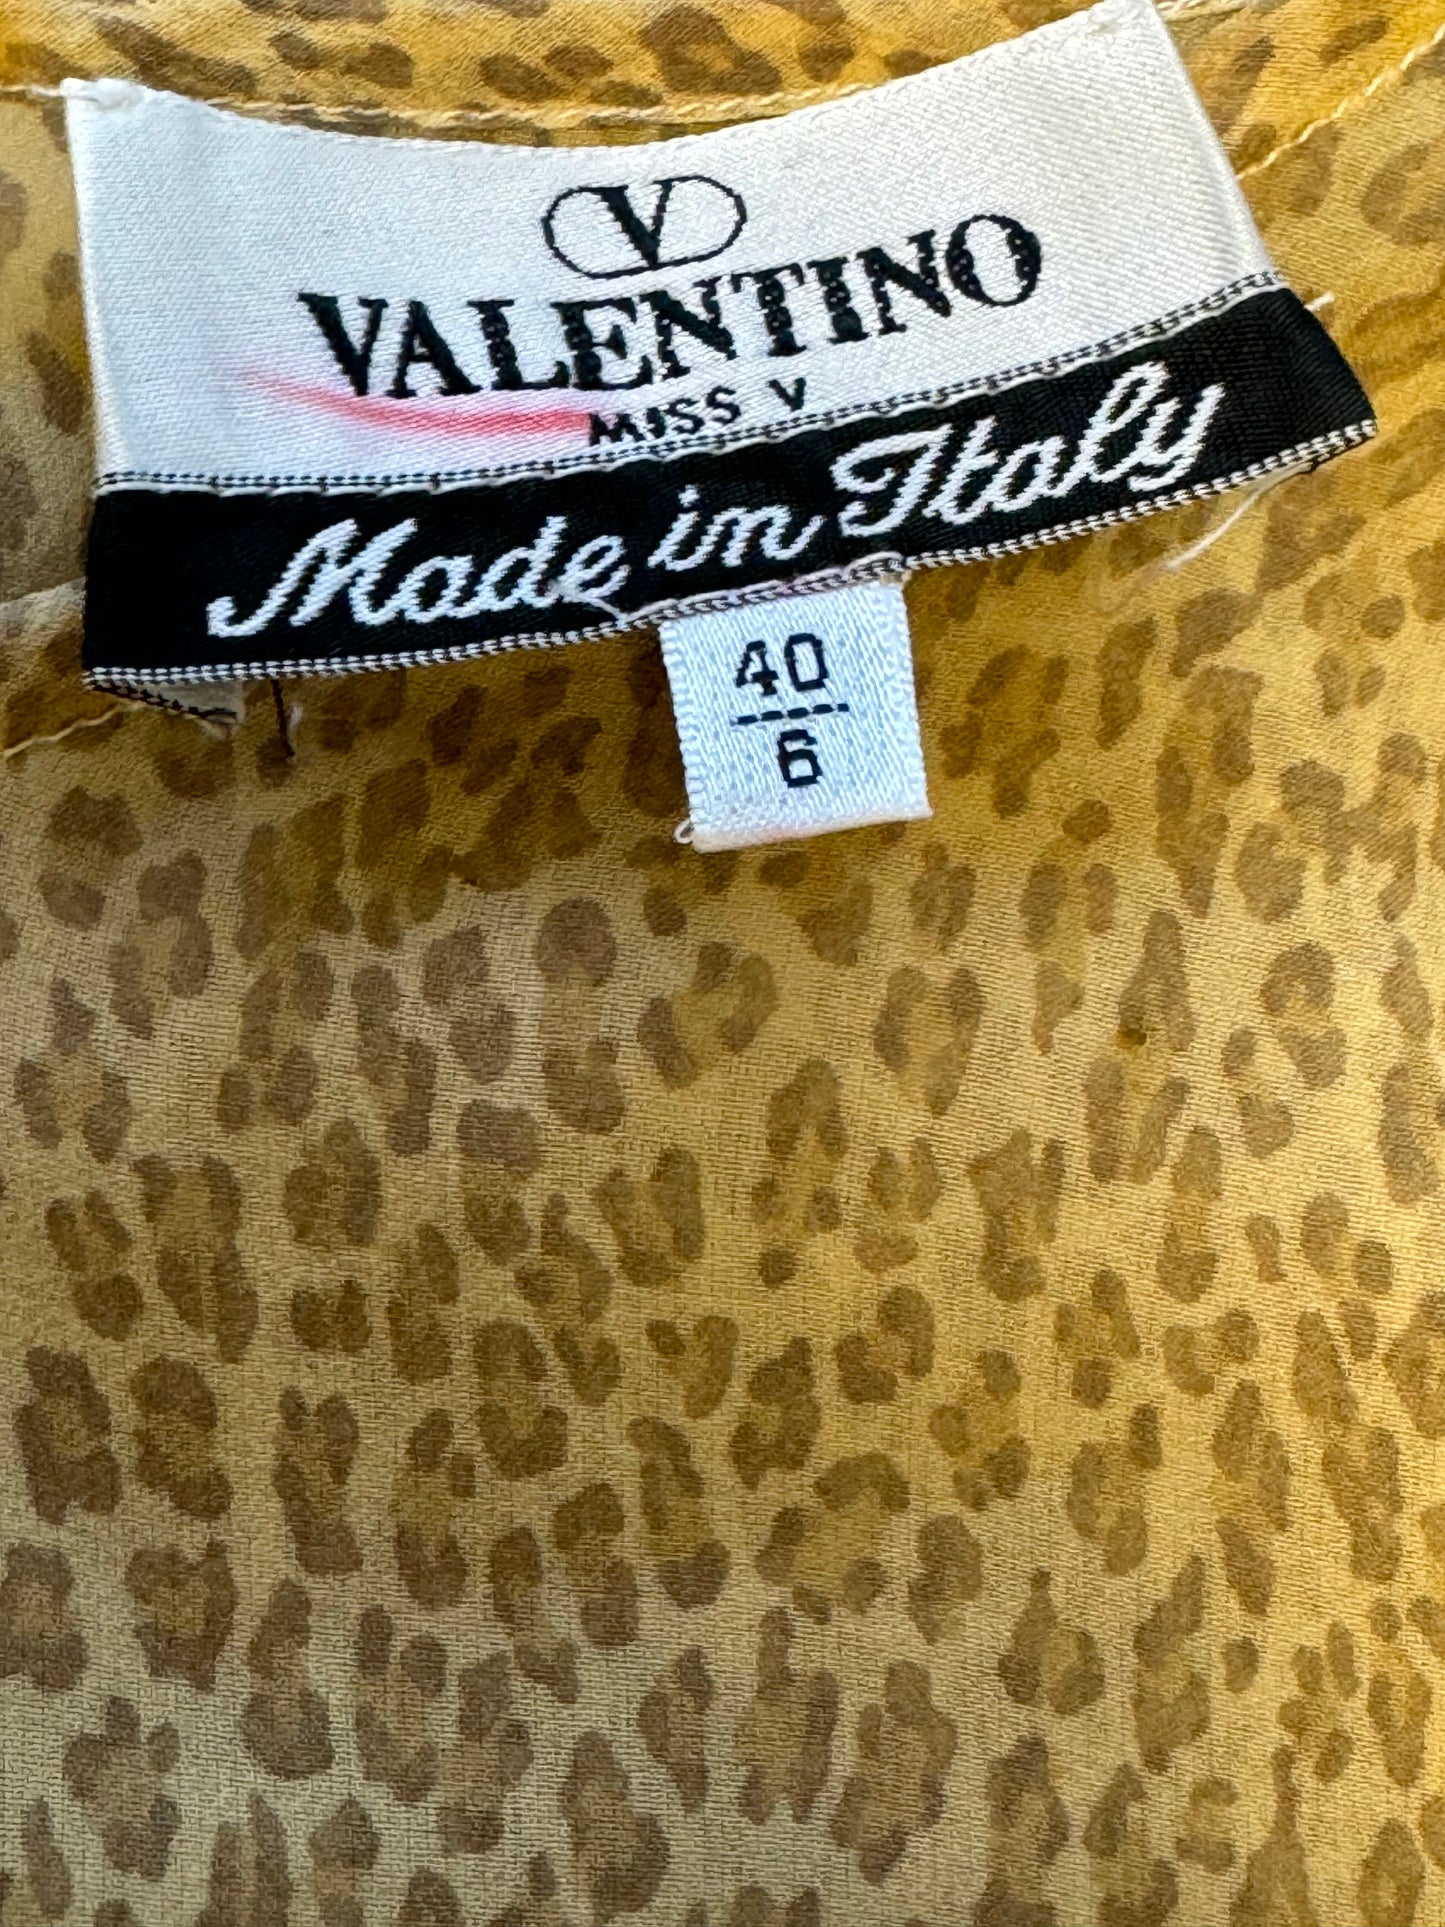 Vintage “Miss V • Valentino” Sheer Cheetah Top